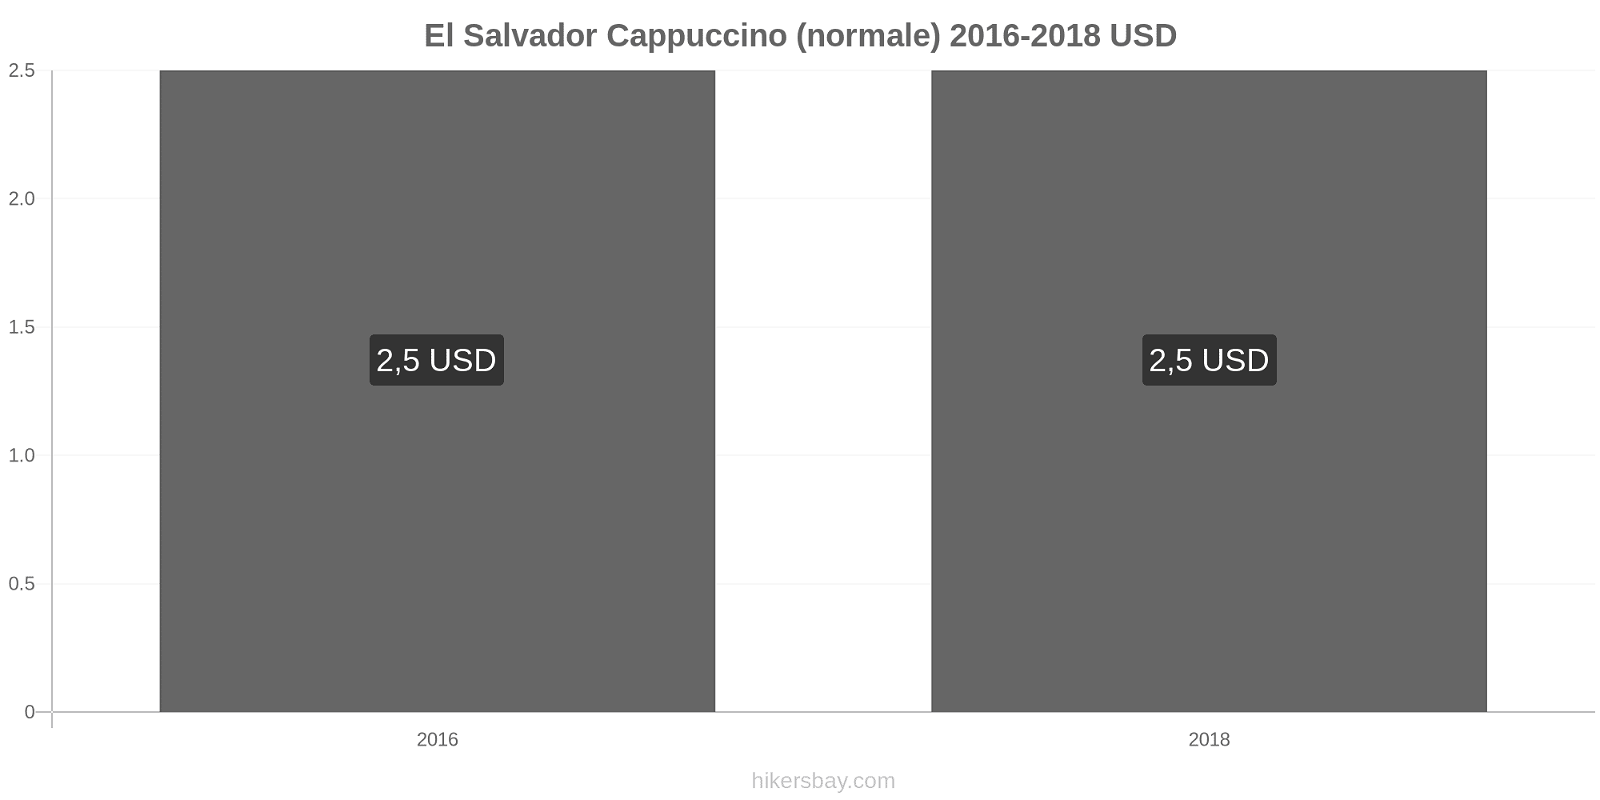 El Salvador cambi di prezzo Cappuccino hikersbay.com